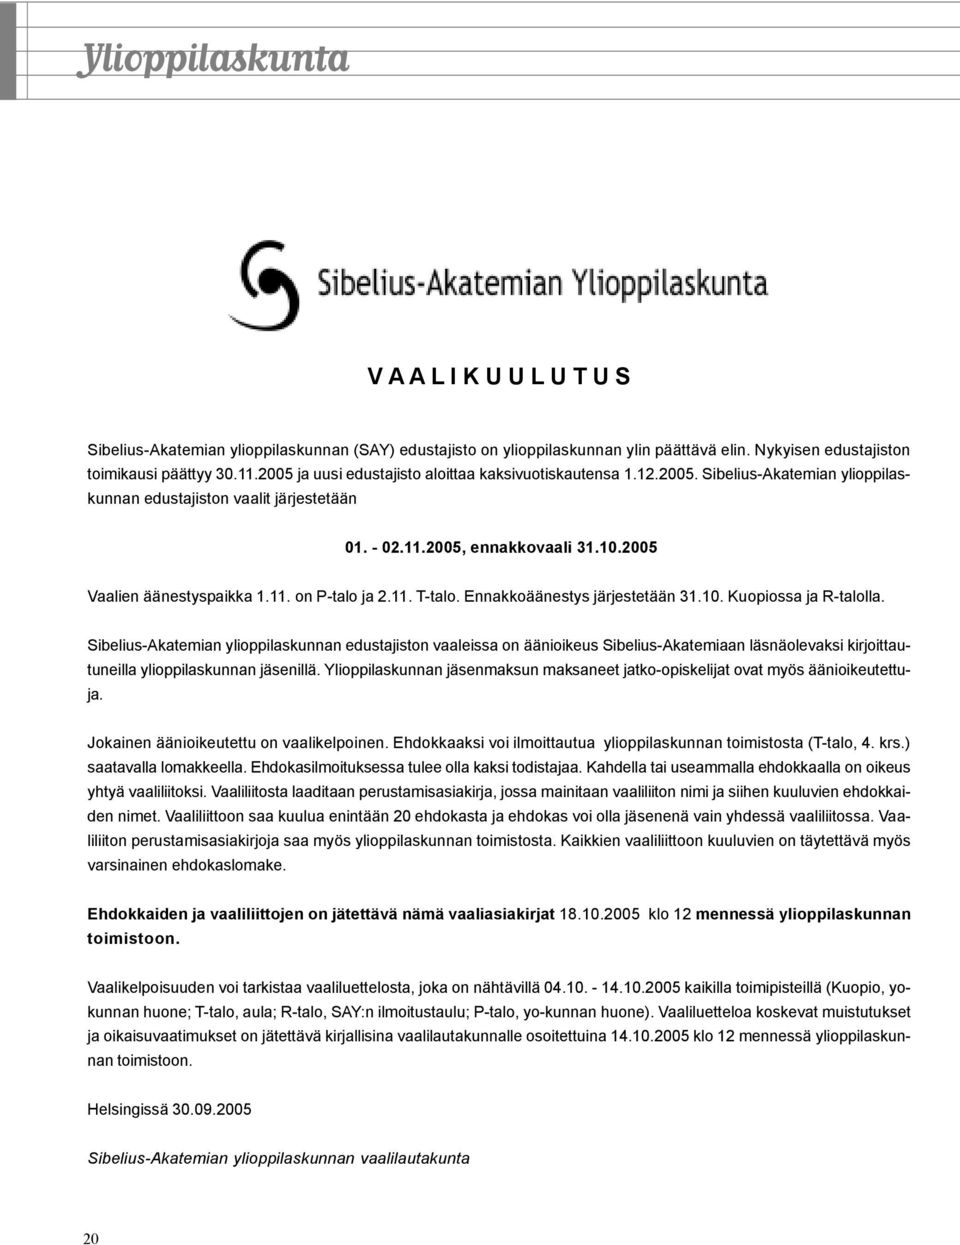 2005 Vaalien äänestyspaikka 1.11. on P-talo ja 2.11. T-talo. Ennakkoäänestys järjestetään 31.10. Kuopiossa ja R-talolla.